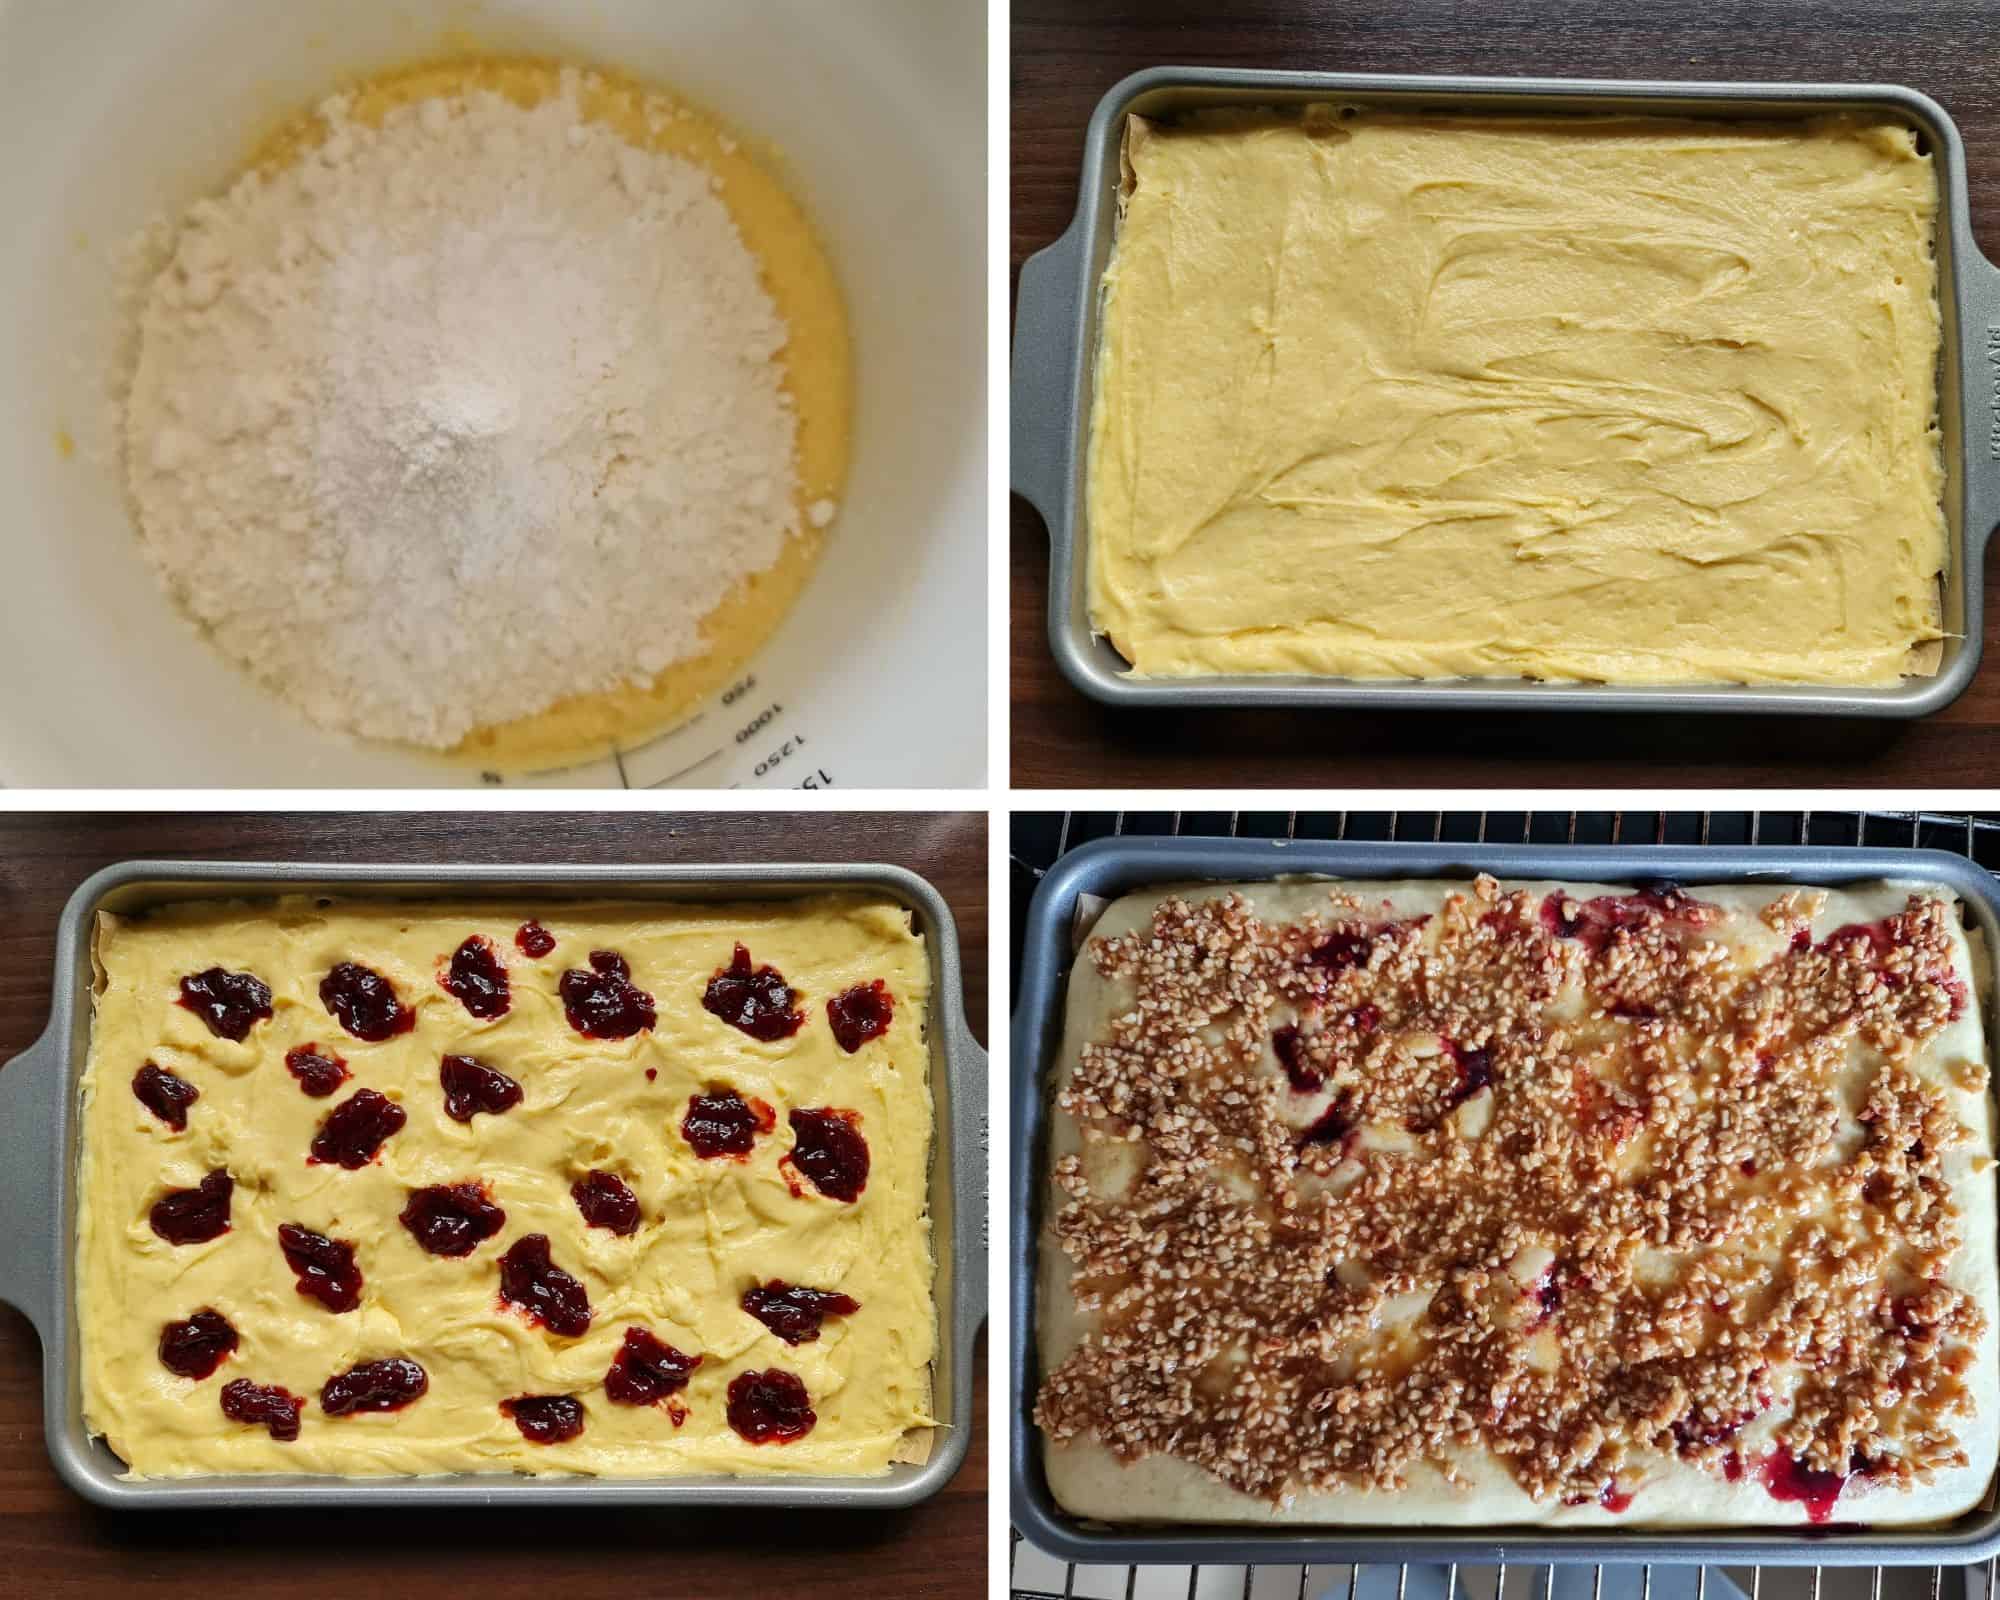 Zubereitungsschritte für den Marmeladen-Blechkuchen